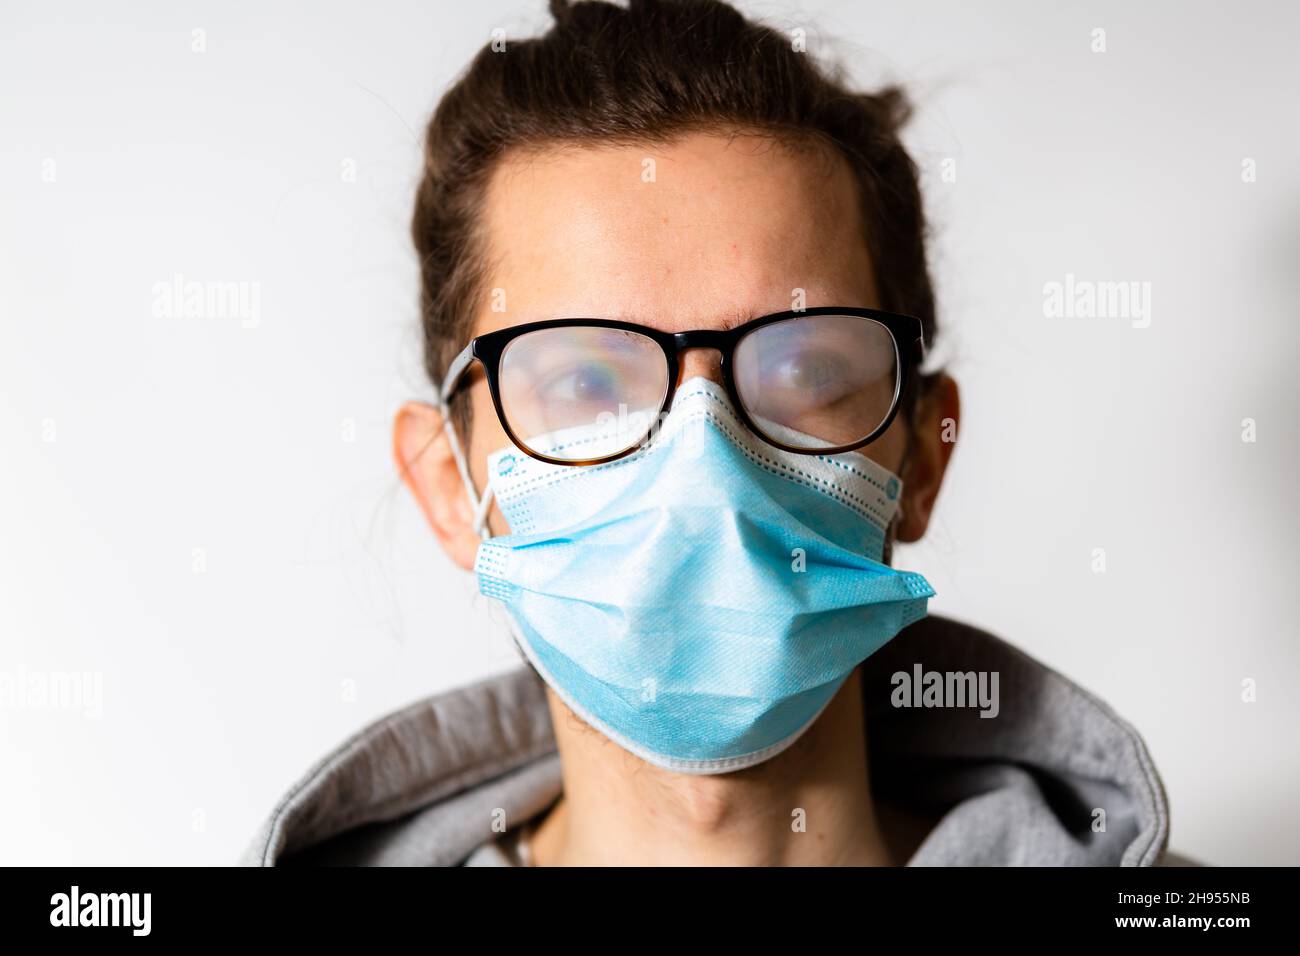 Junger Mann mit nebligen Gläsern durch das Tragen von Einwegmaske verursacht. Schutzmaßnahme während einer Coronavirus-Pandemie Stockfoto